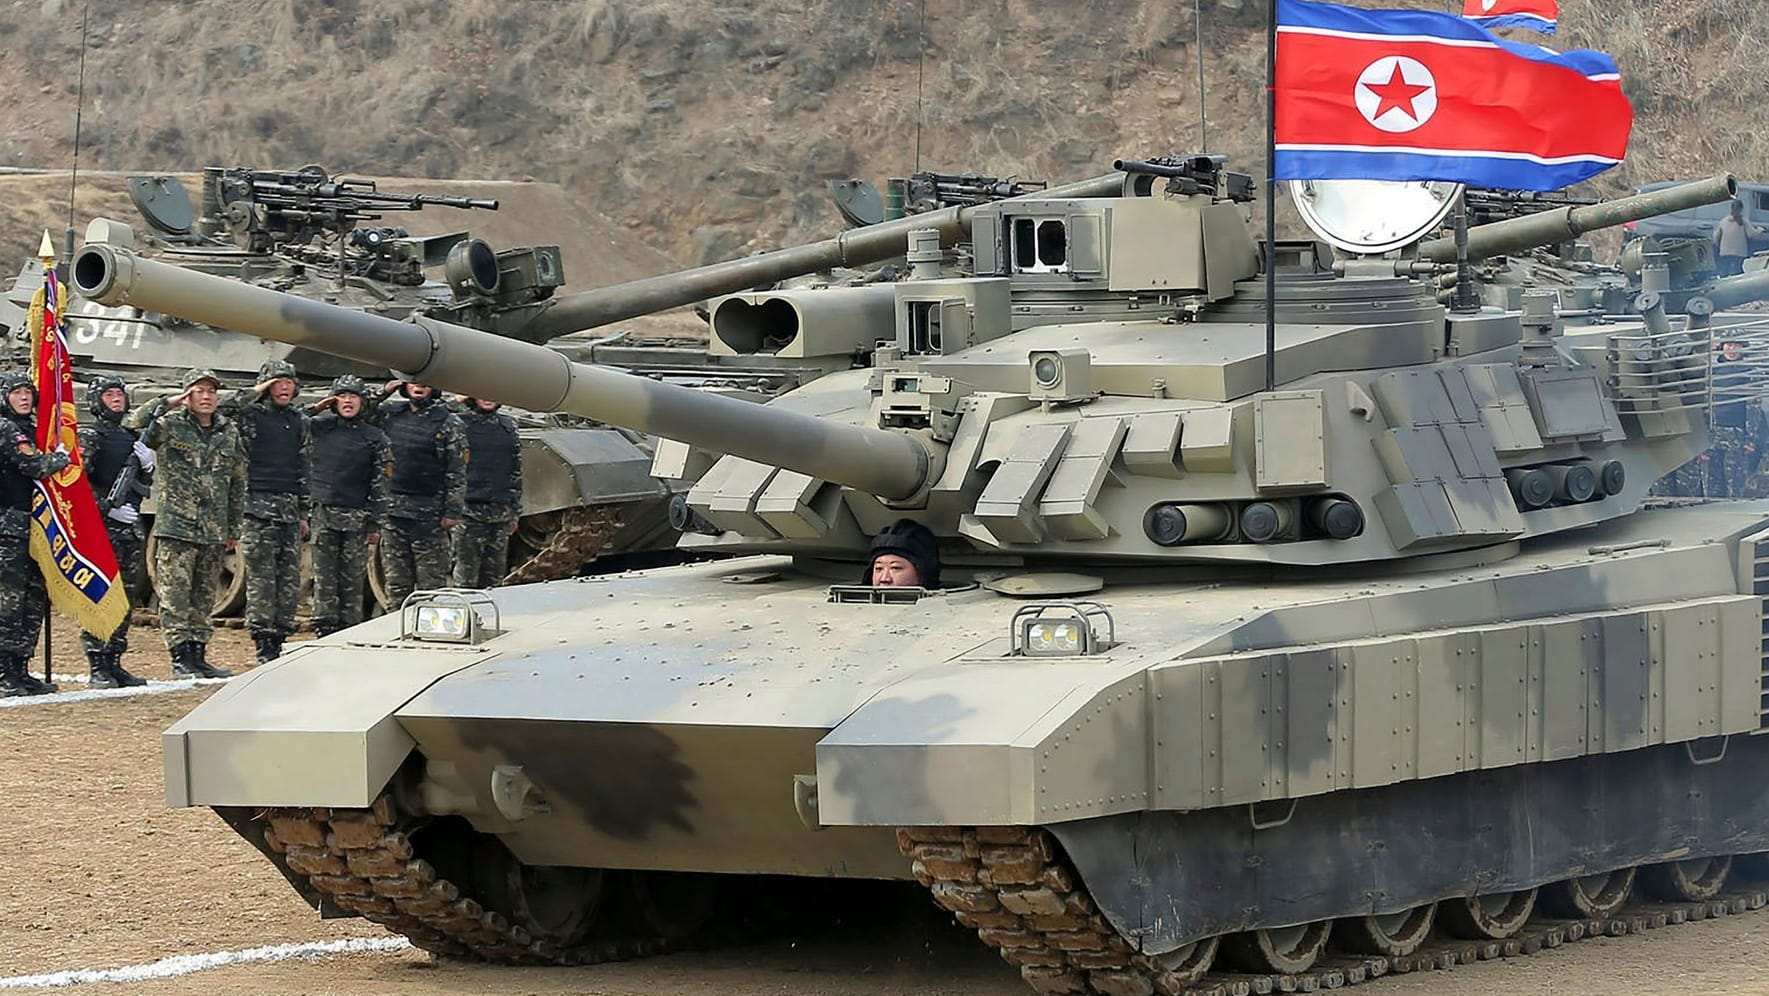 Nordkorea: Kim Jong-un stellt neuen Panzer vor – Drohung an die USA?